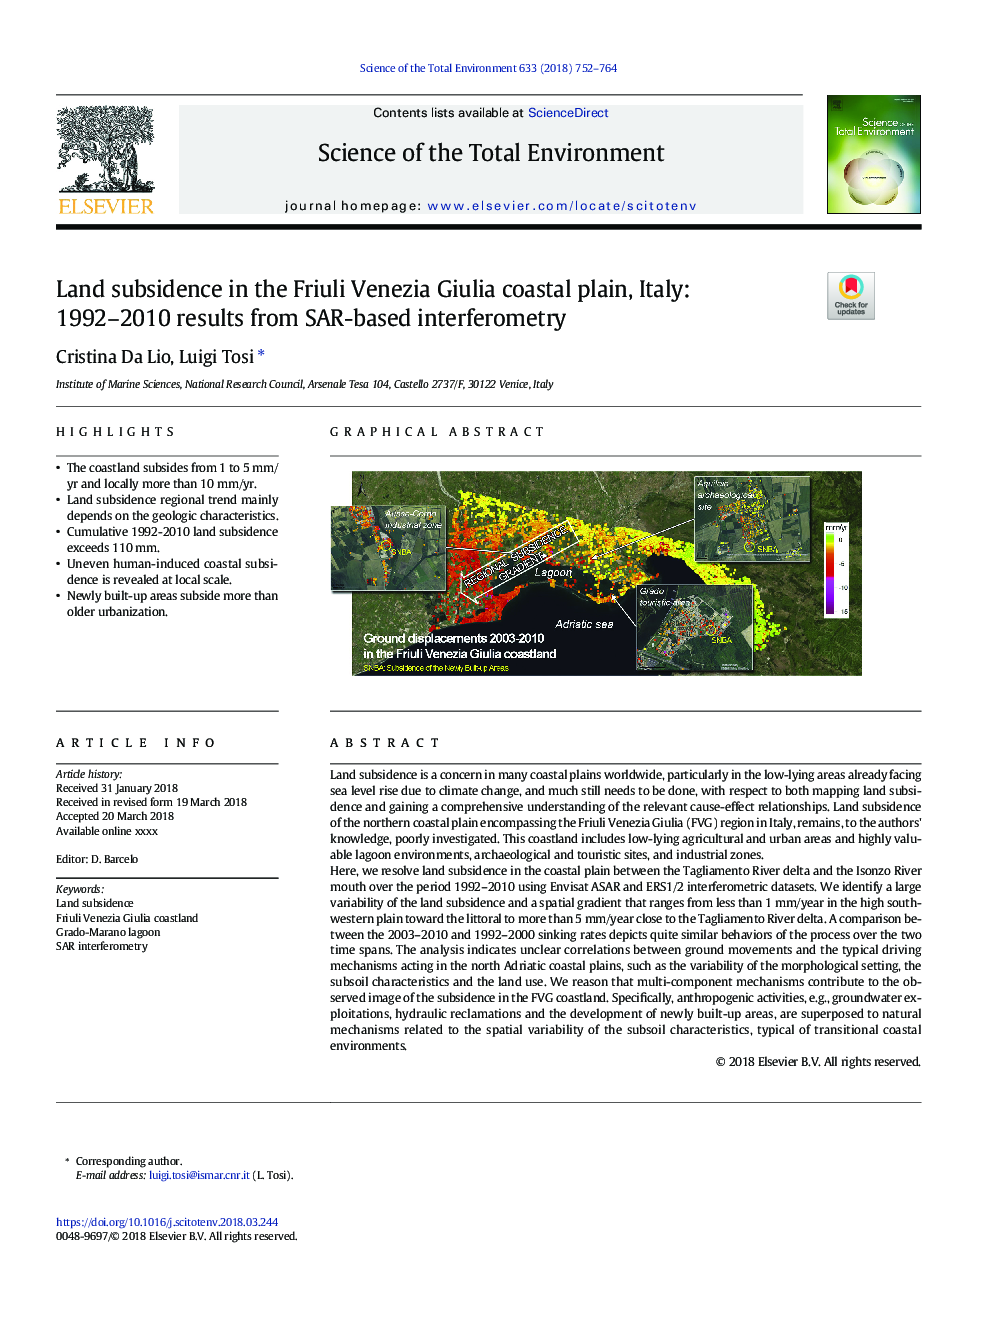 Land subsidence in the Friuli Venezia Giulia coastal plain, Italy: 1992-2010 results from SAR-based interferometry